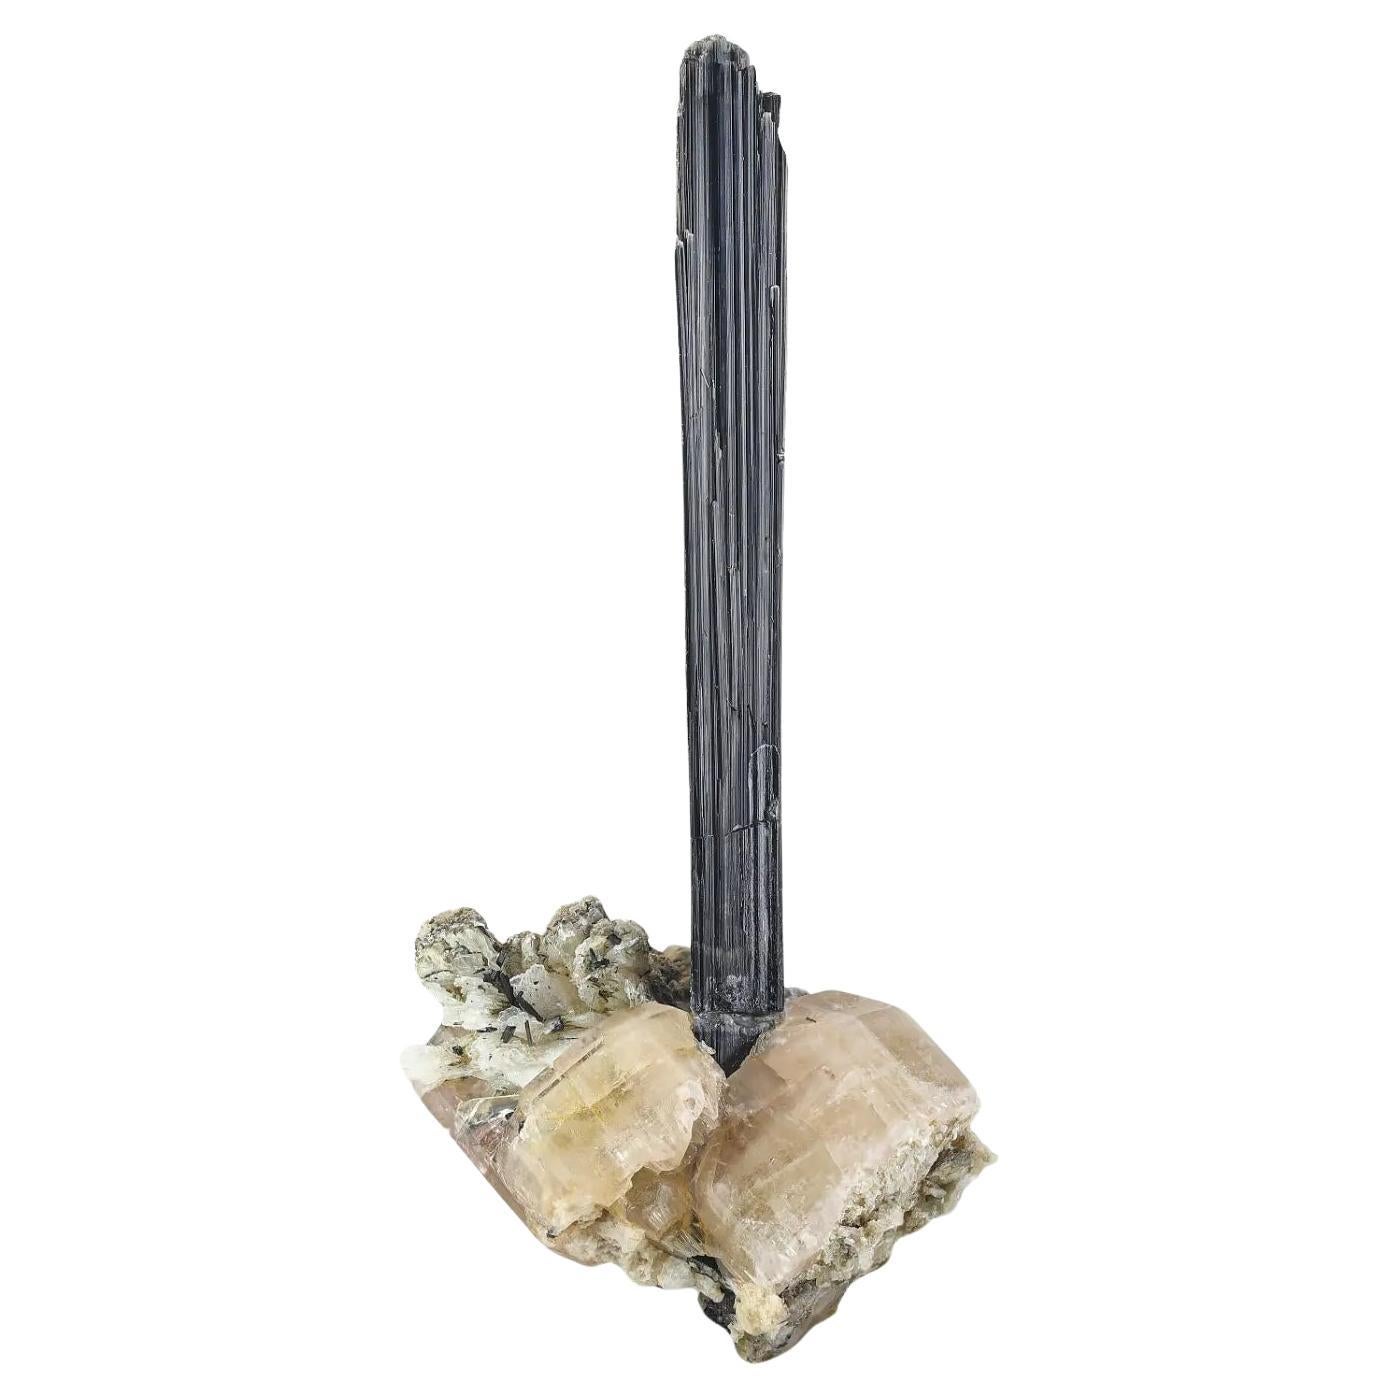 Langer freistehender Schorl aus schwarzem Turmalinkristall auf Apatit aus Pakistan